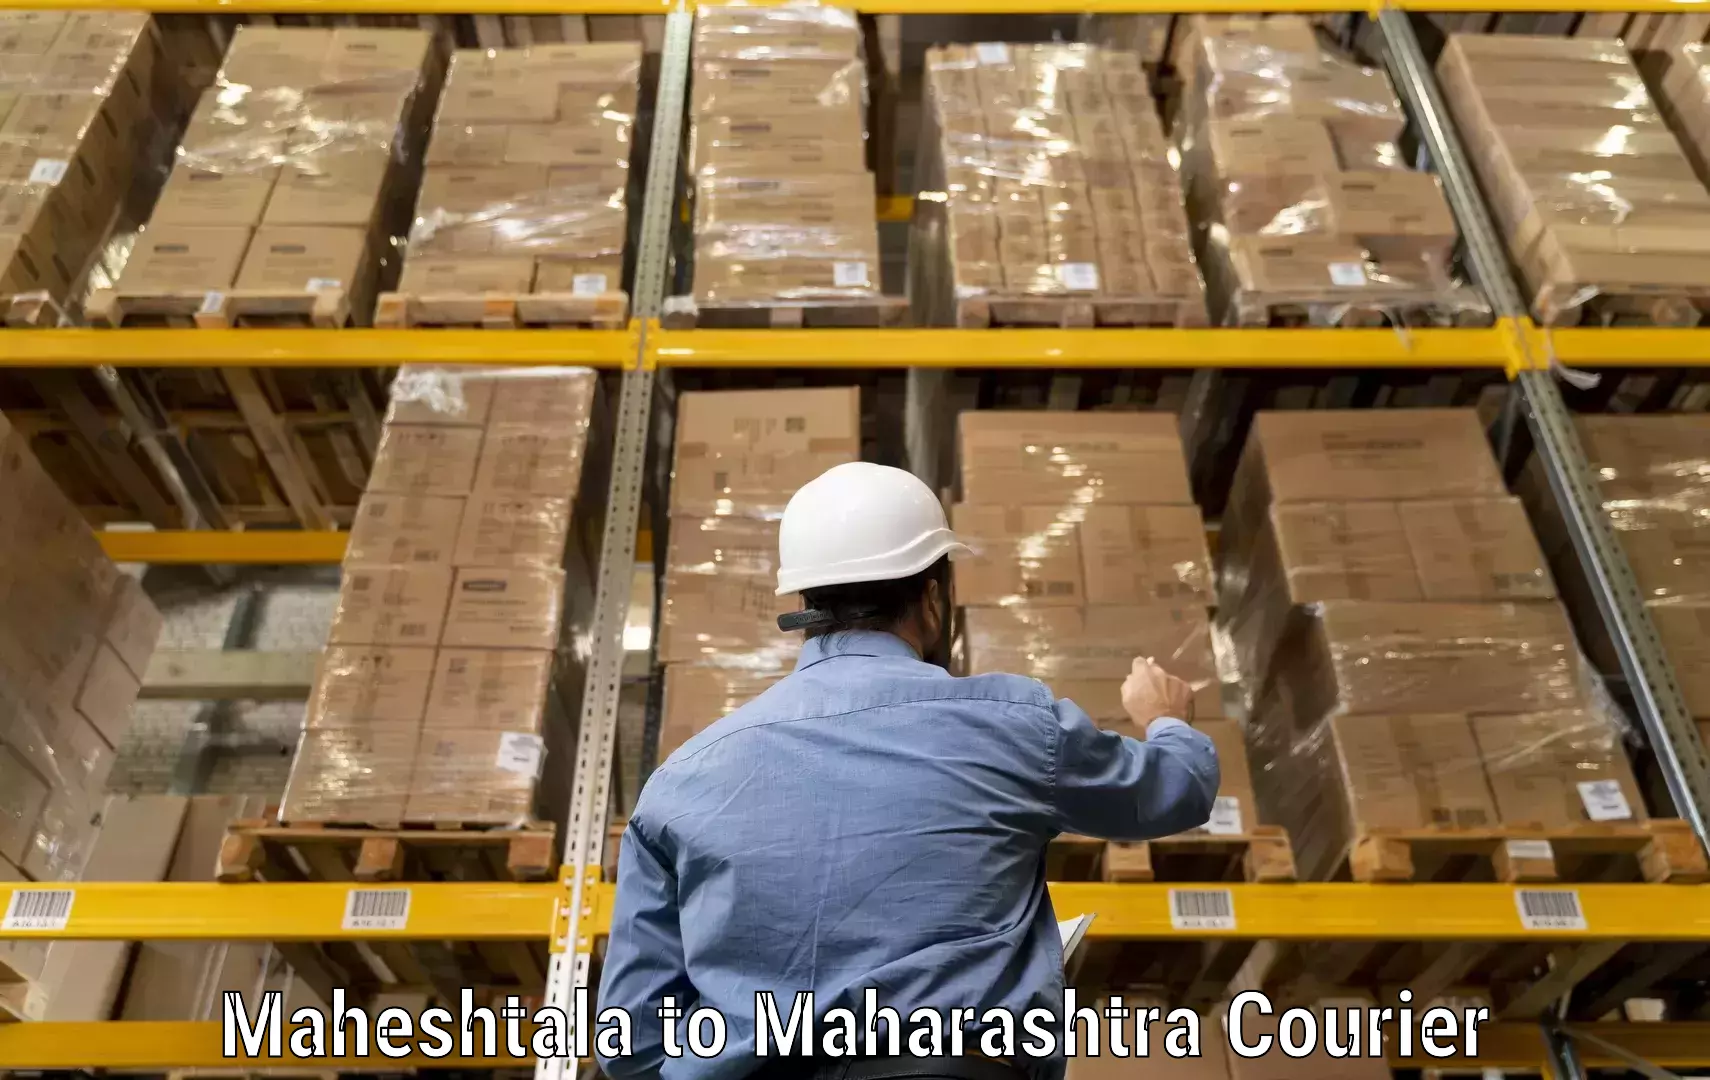 Express delivery solutions Maheshtala to Maharashtra